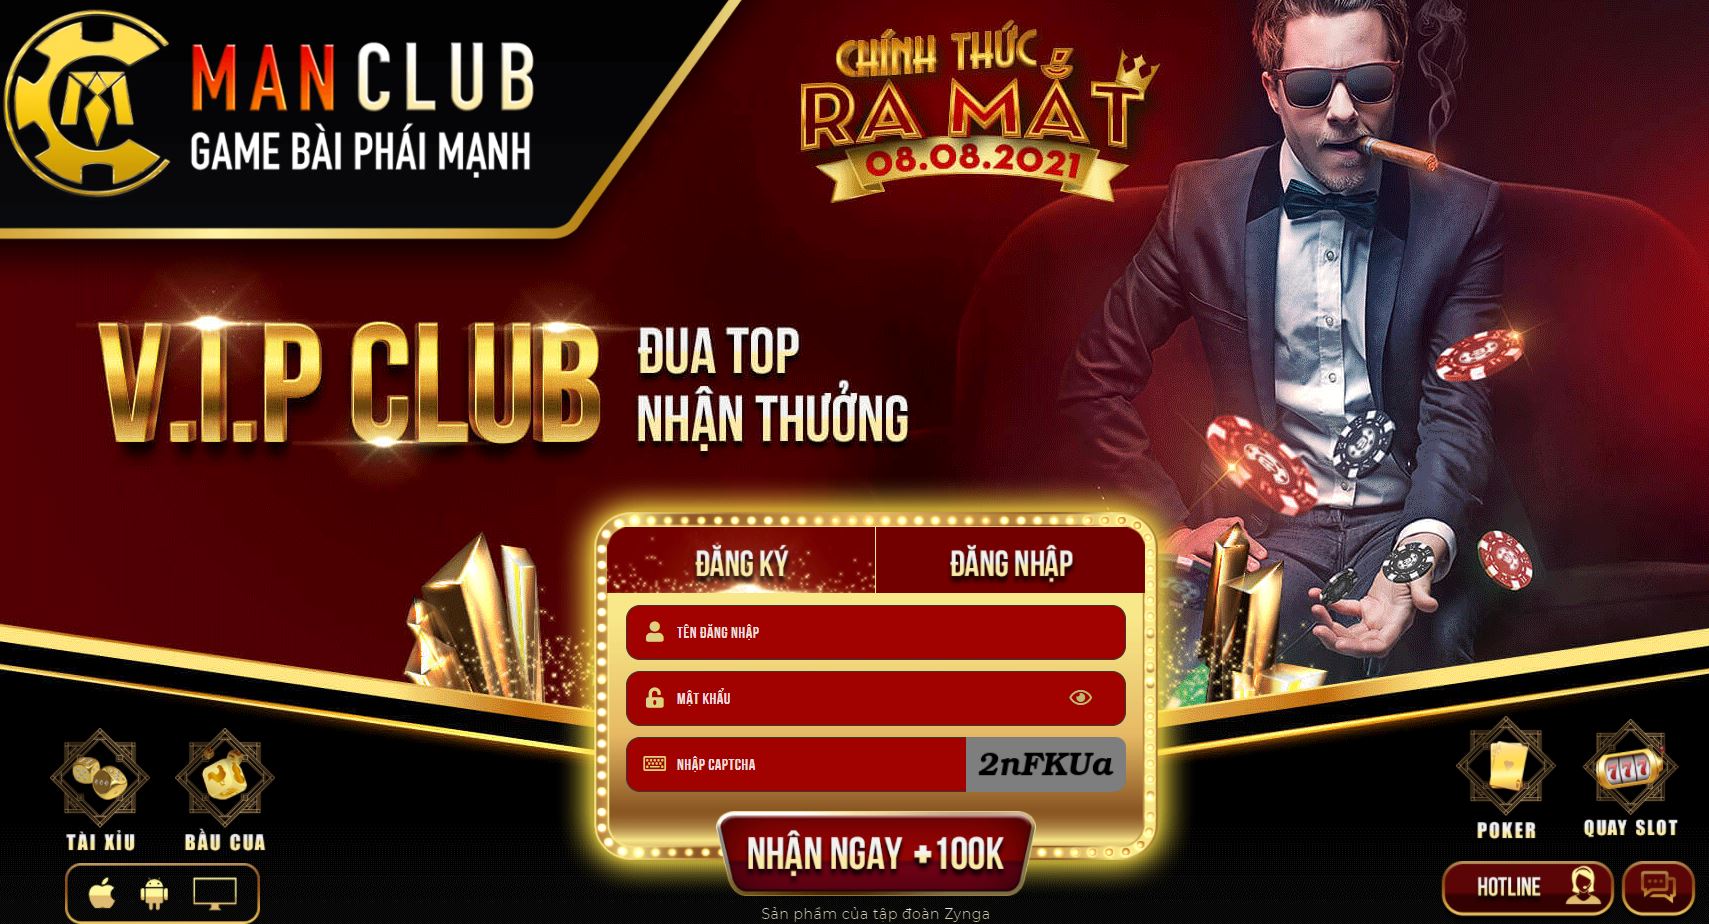 Manclub – Game bài Man Club: Khoái cảm của cờ bạc đổi thưởng